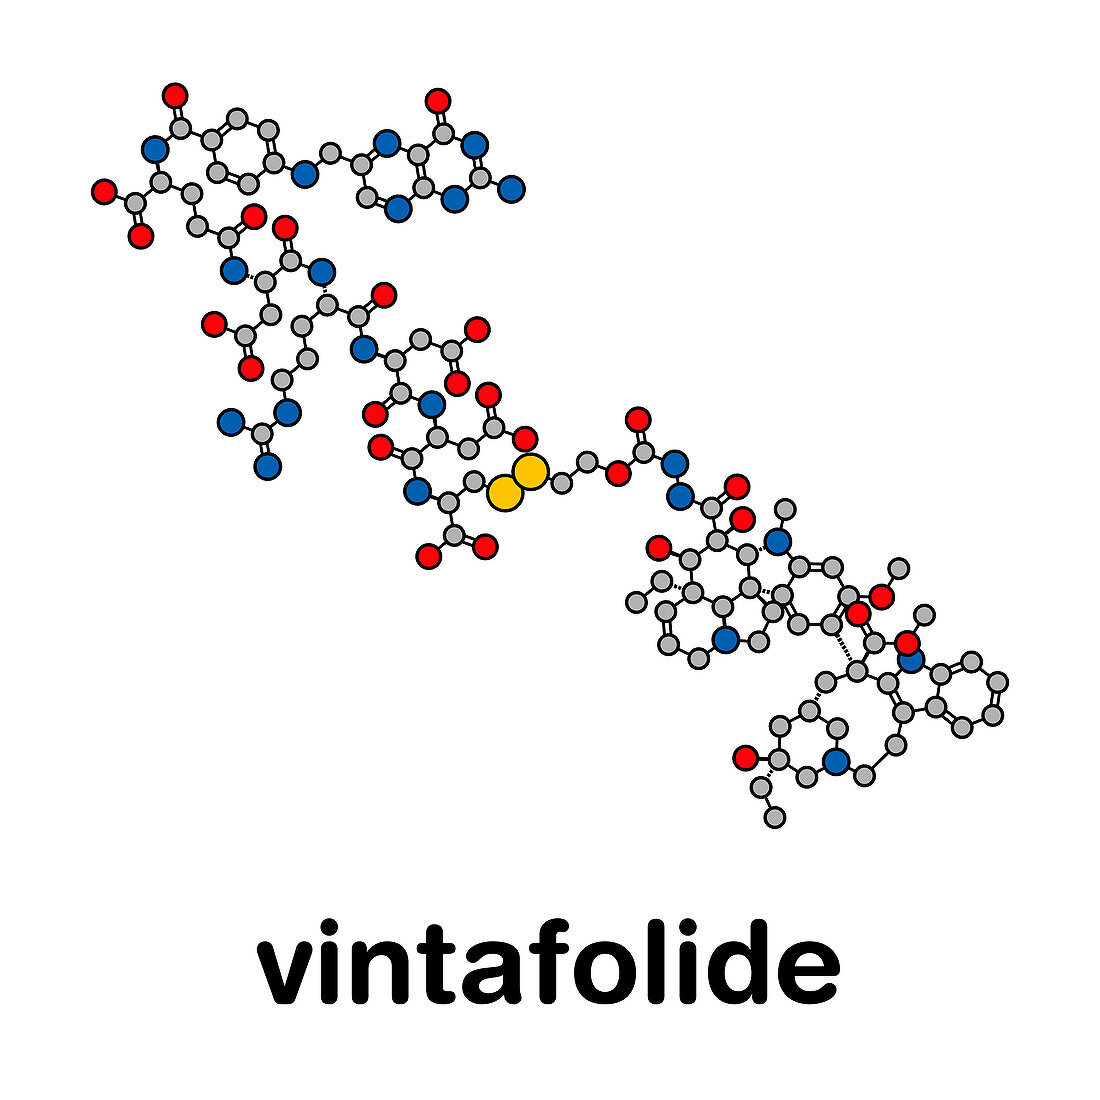 Vintafolide cancer drug, molecular model